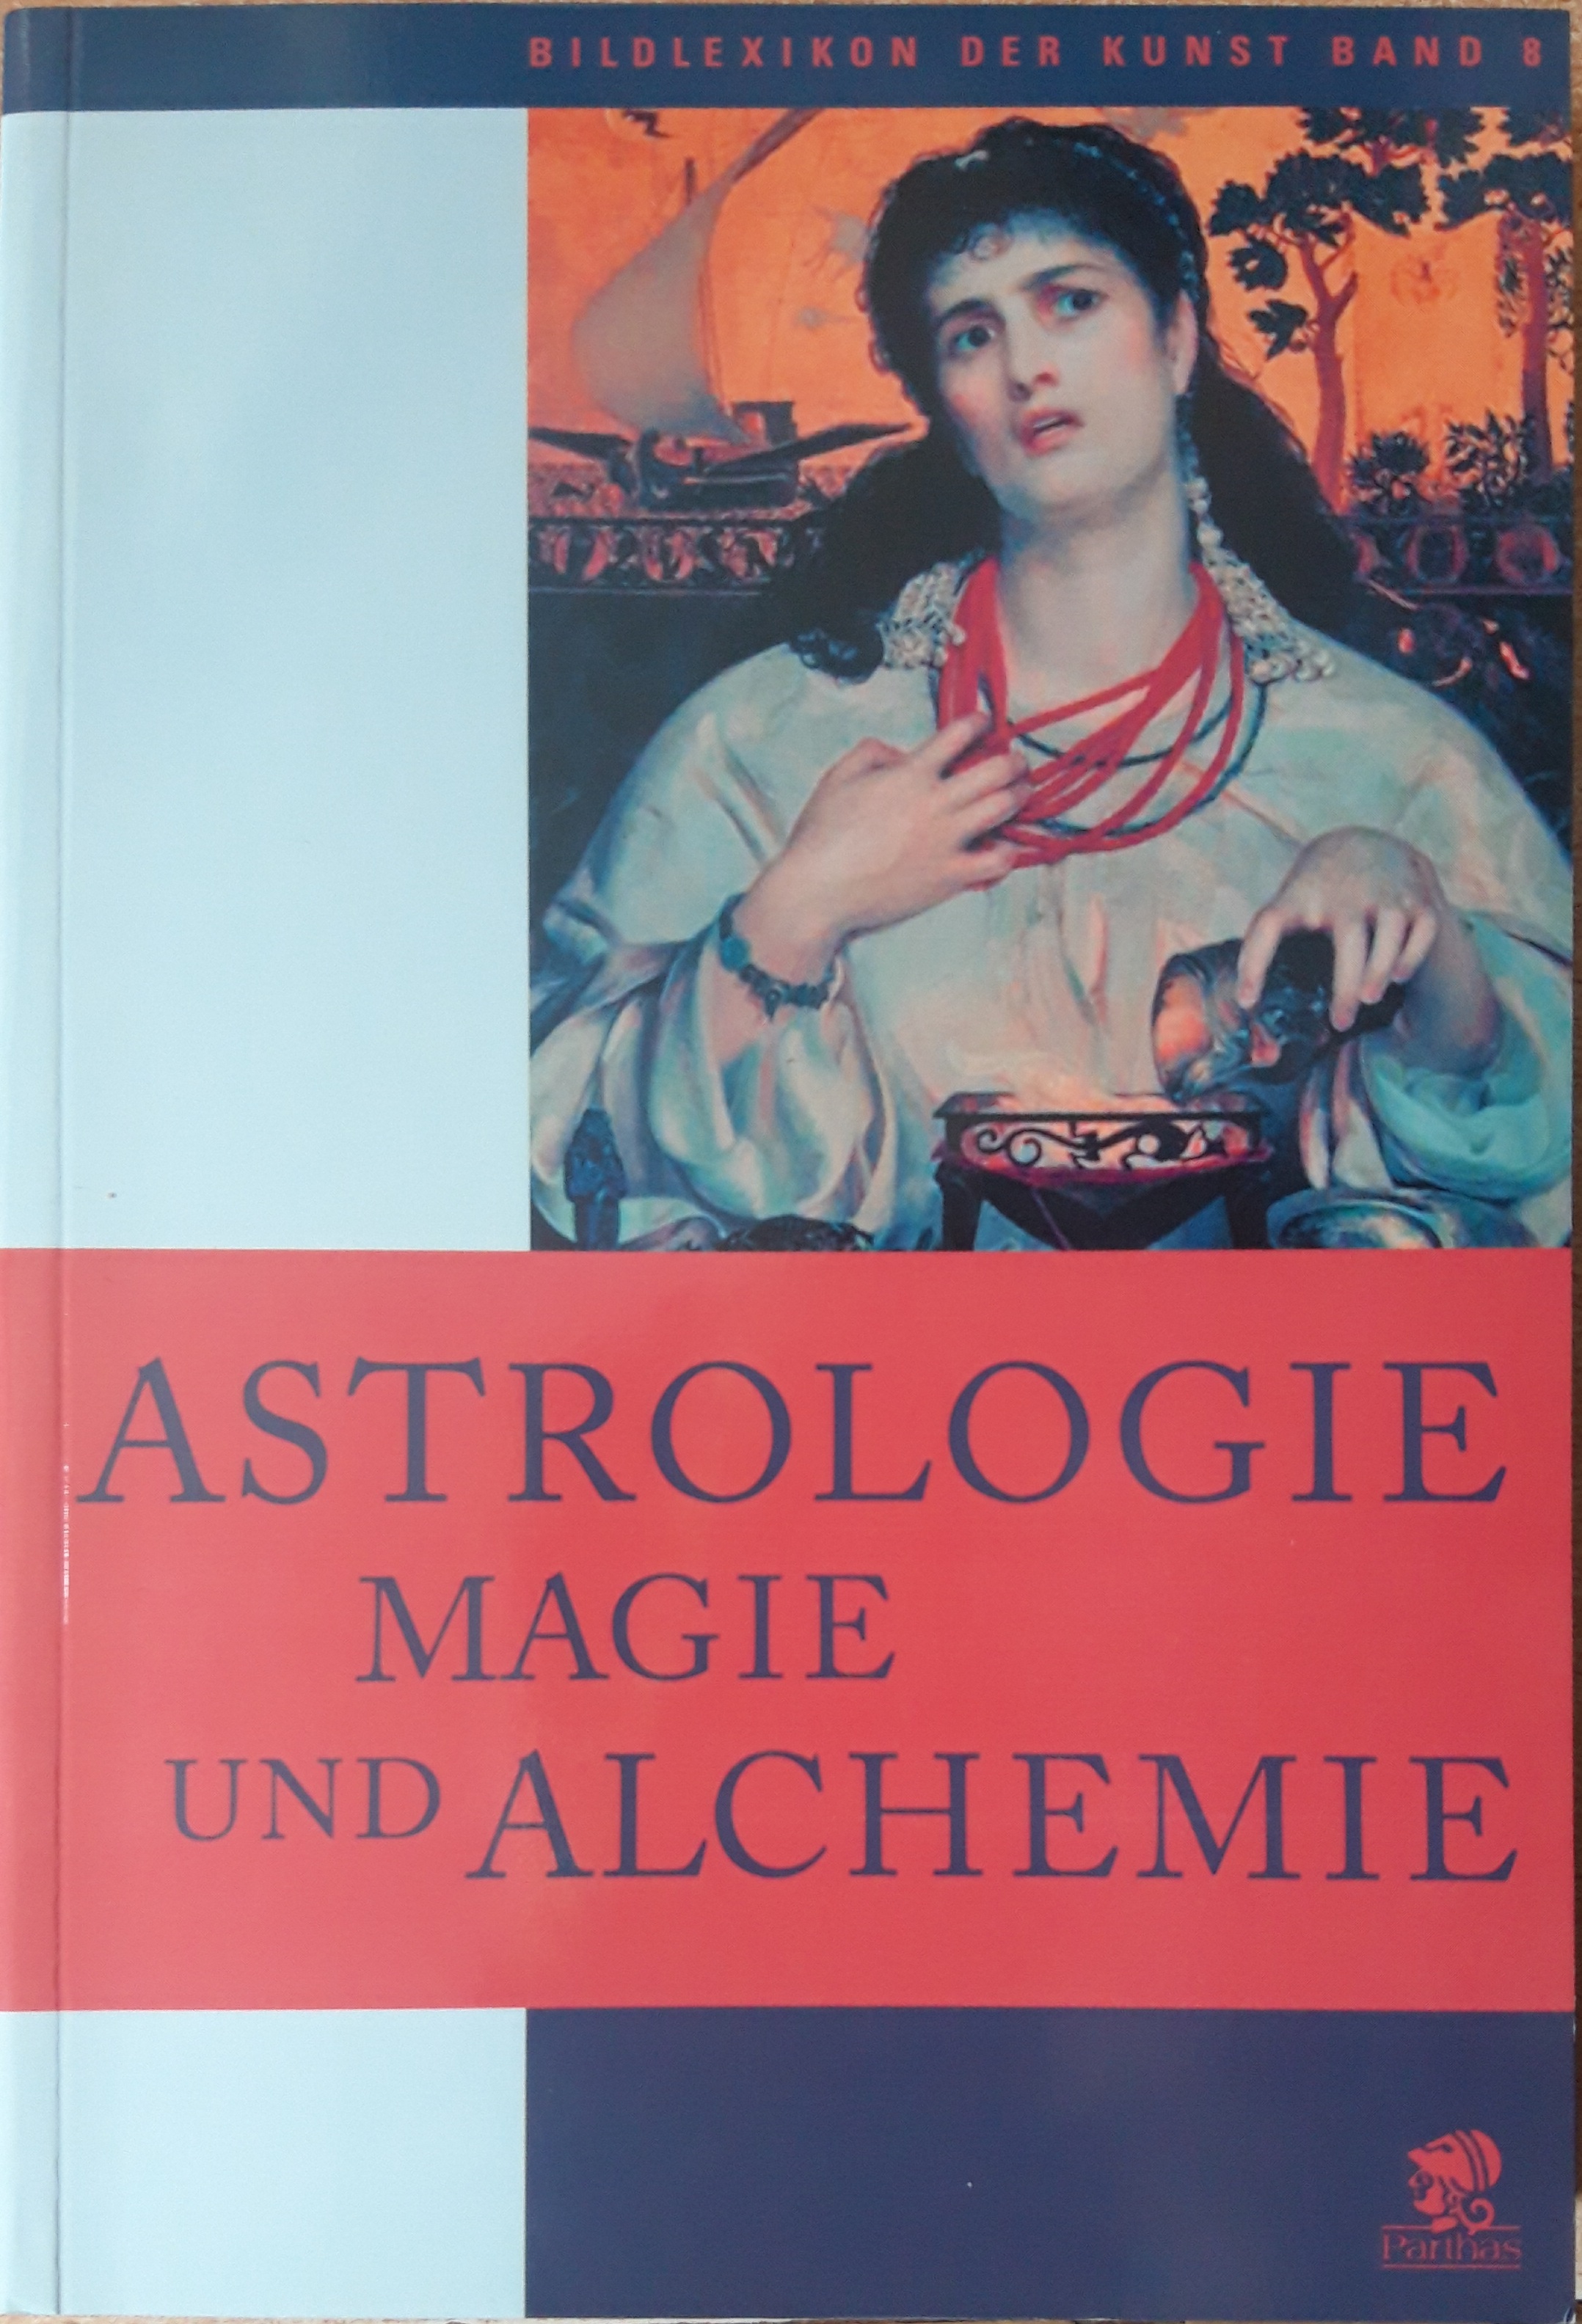 Astrologie Magie und Alchemie, Bildlexikon der Kunst Band 8 - Matilde Battistini